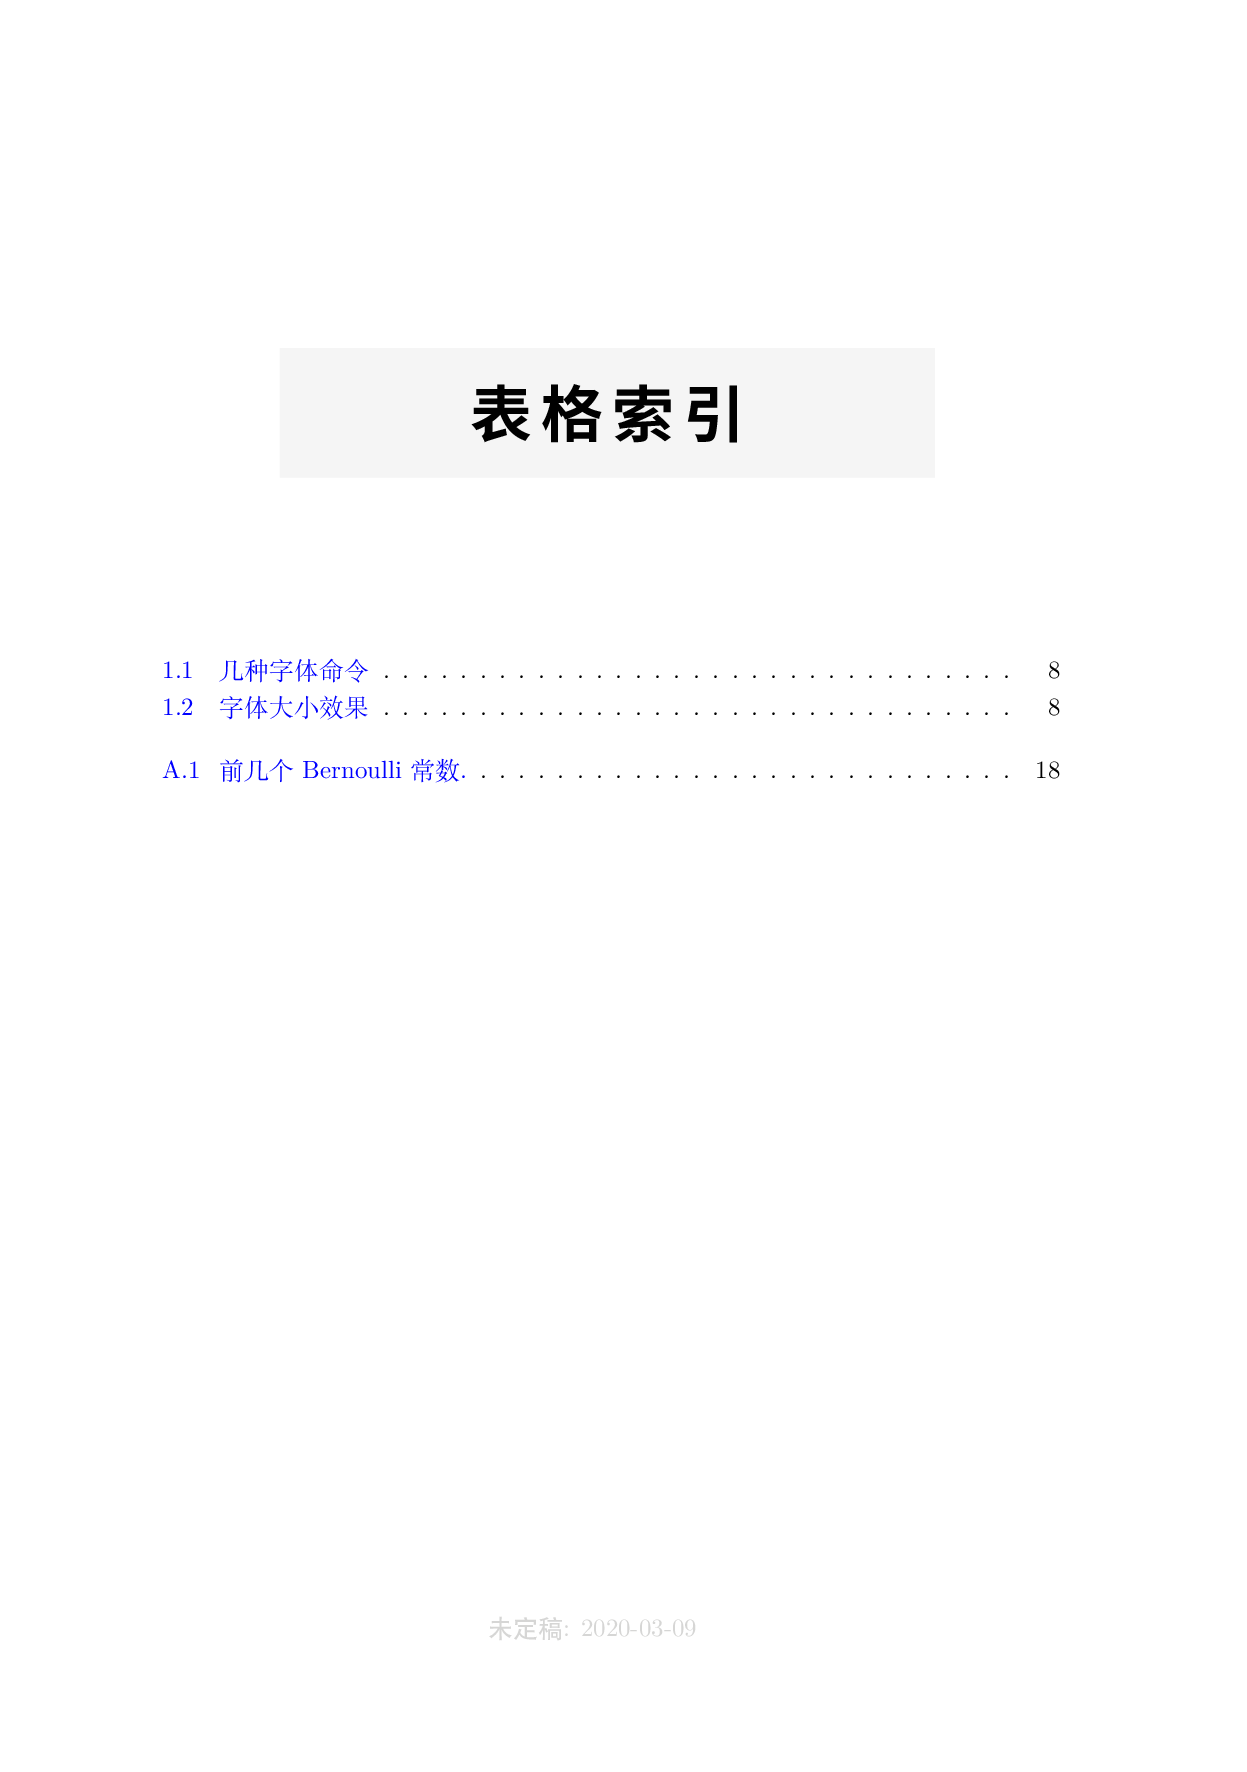 李文威老师代数学方法书籍模板 - 含完整 LaTeX 源码（高教出版）